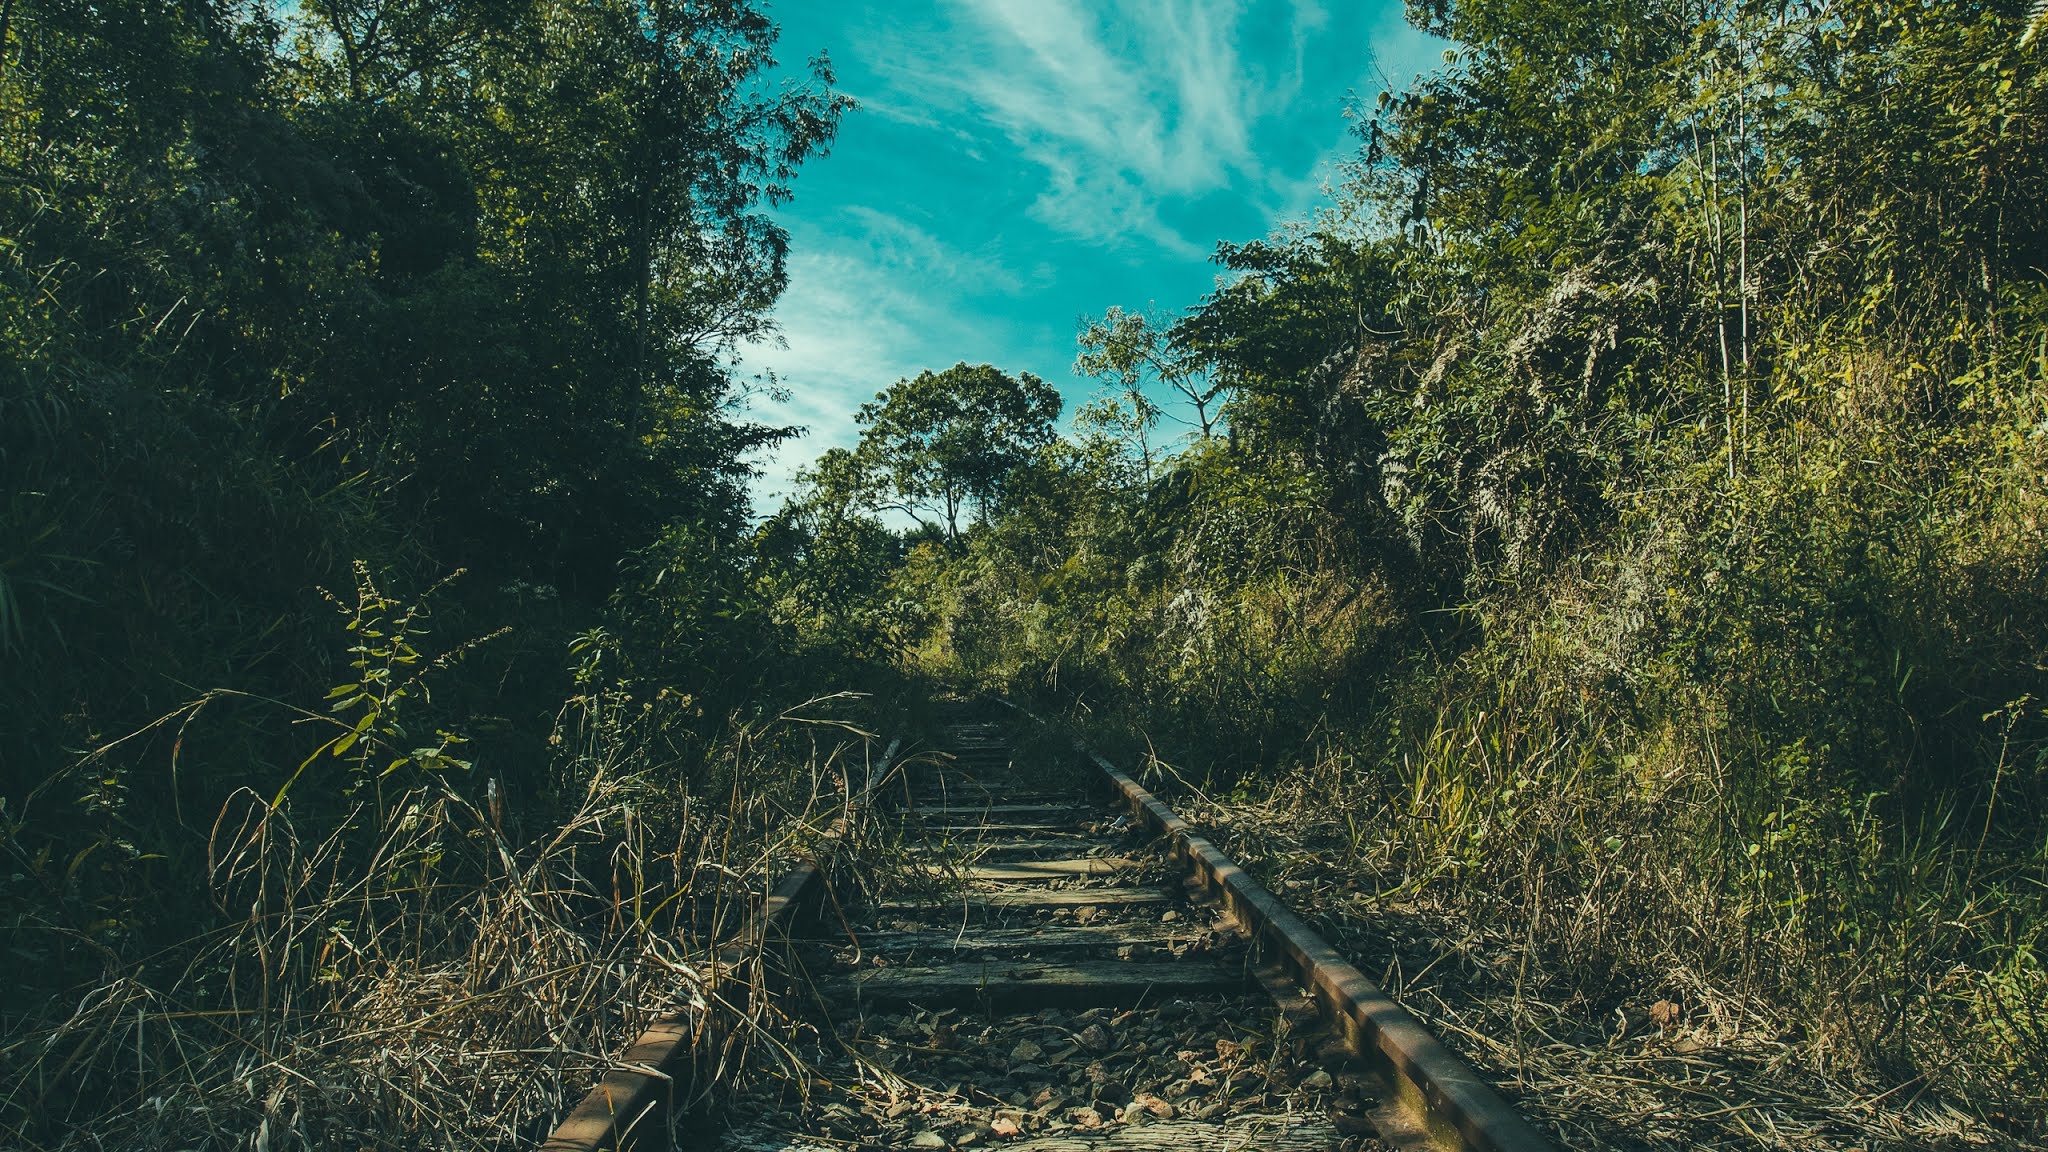 Abandoned Railway Tracks